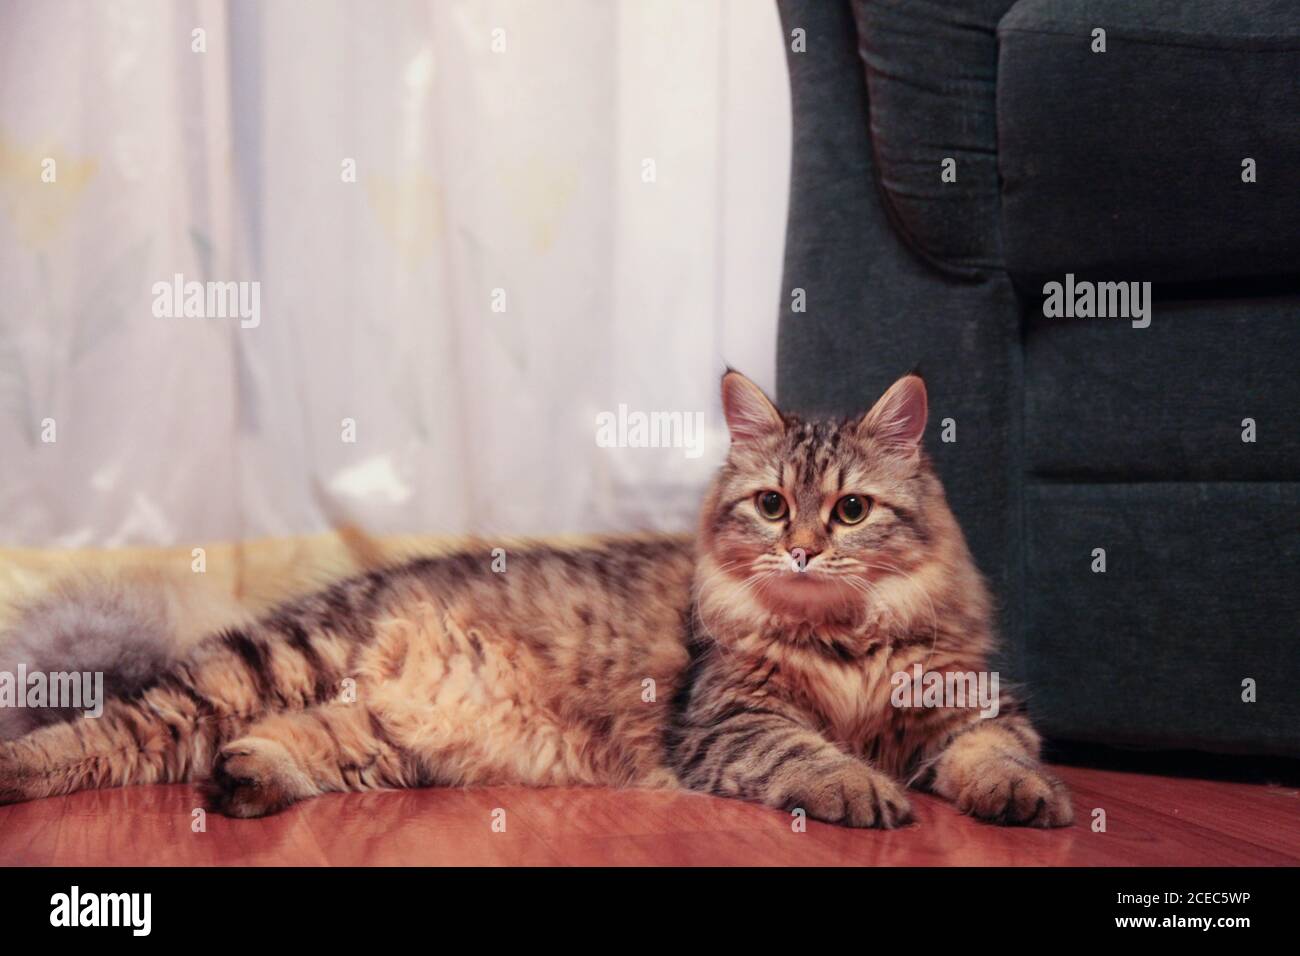 le chat rayé se trouve majestueusement sur le sol Banque D'Images